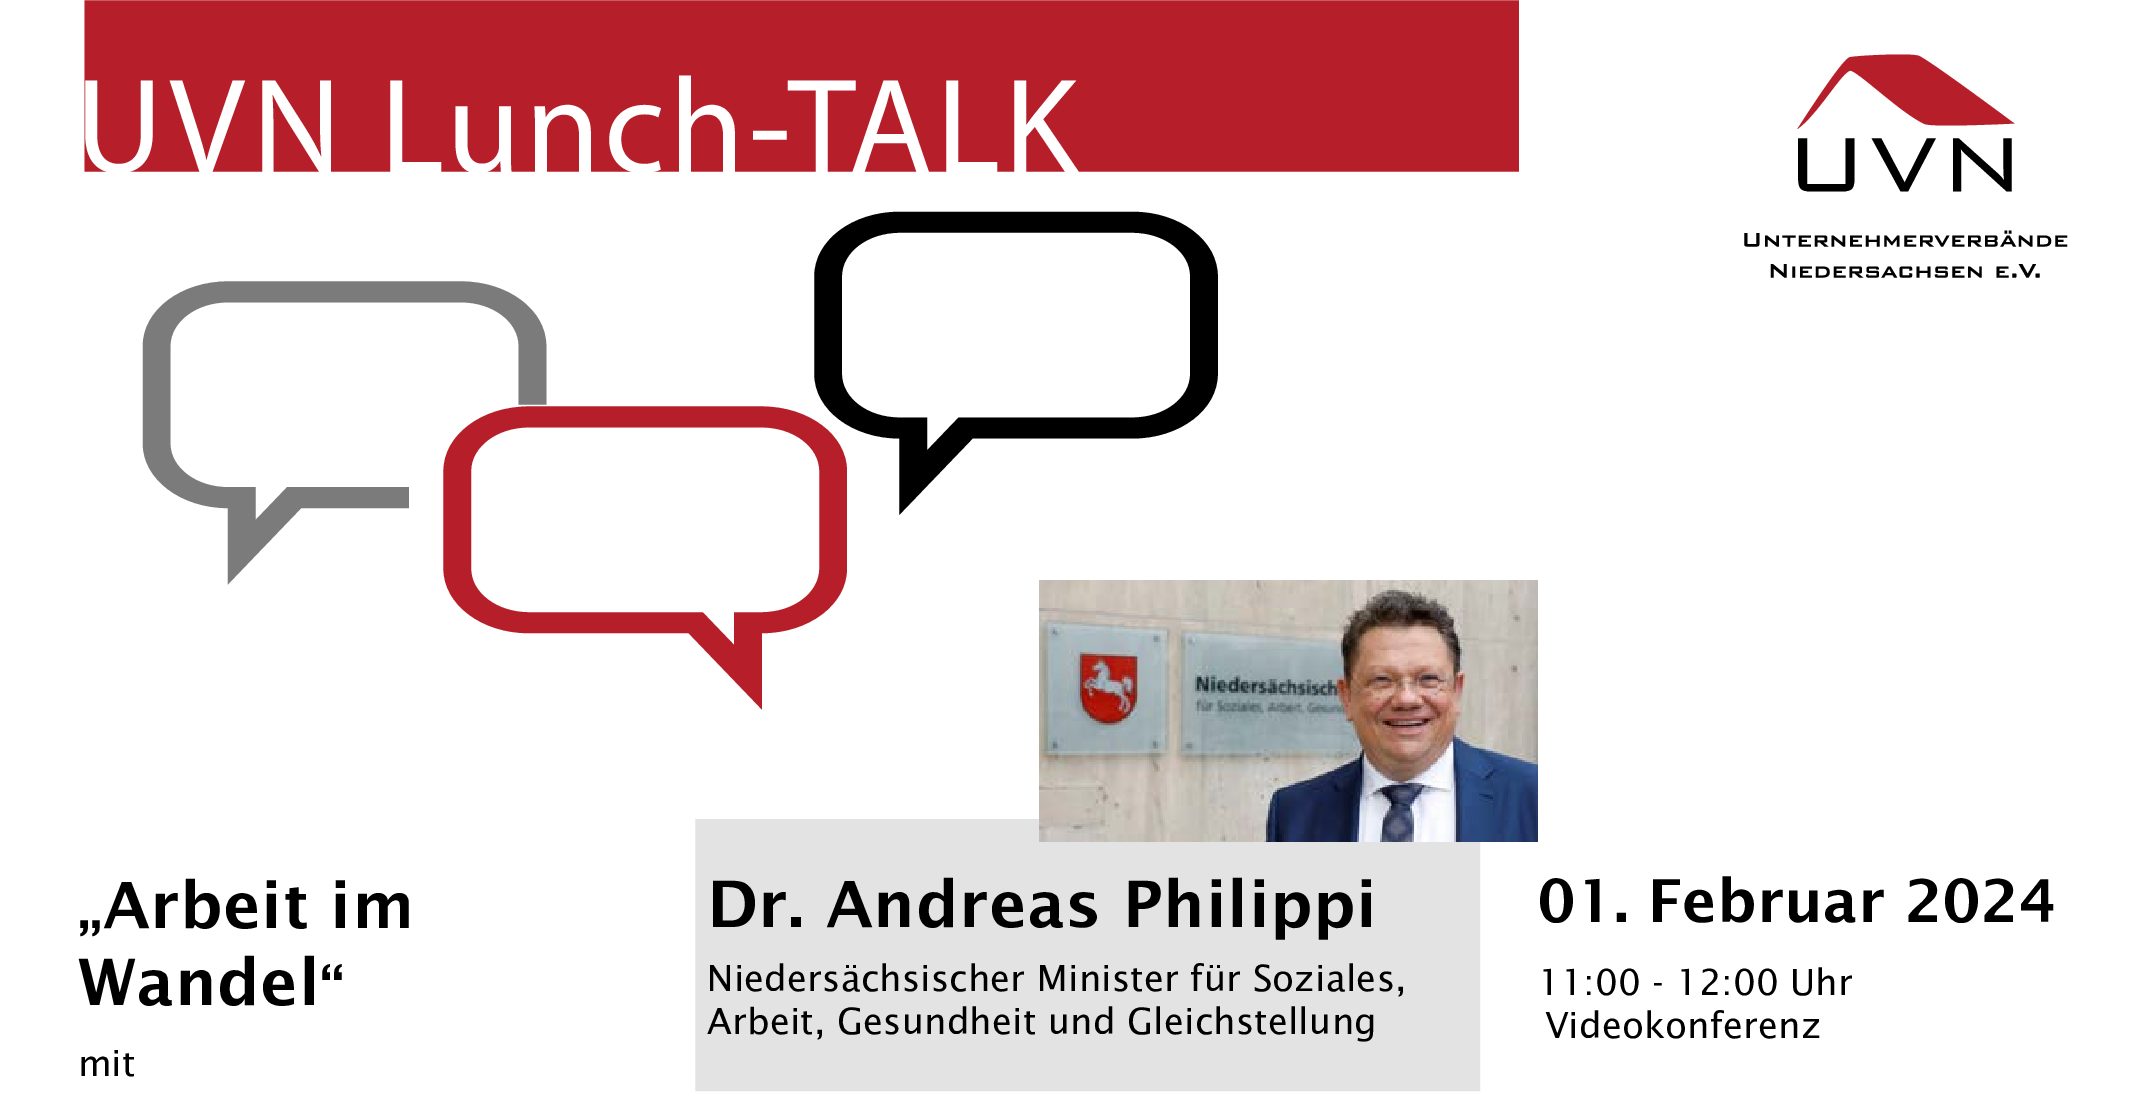 UVN Lunch-TALK zur Arbeit im Wandel mit Minister Dr. Andreas Philippi - Inklusion und Budget für Arbeit